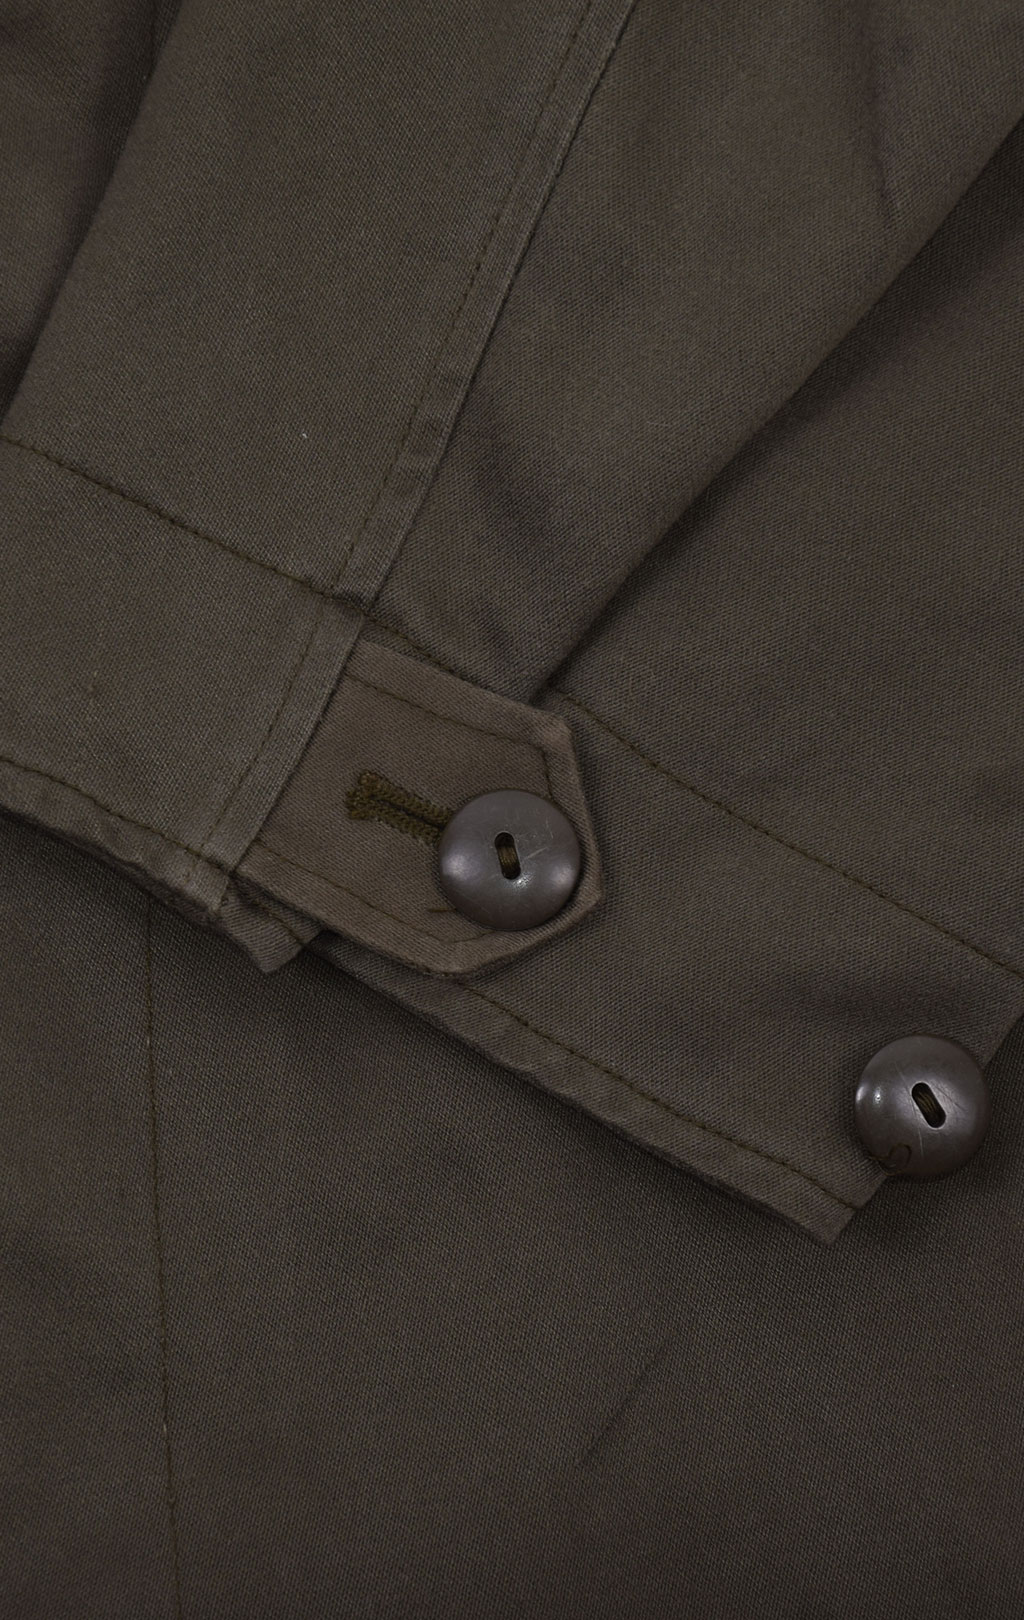 Куртка M-65 olive б/у Австрия